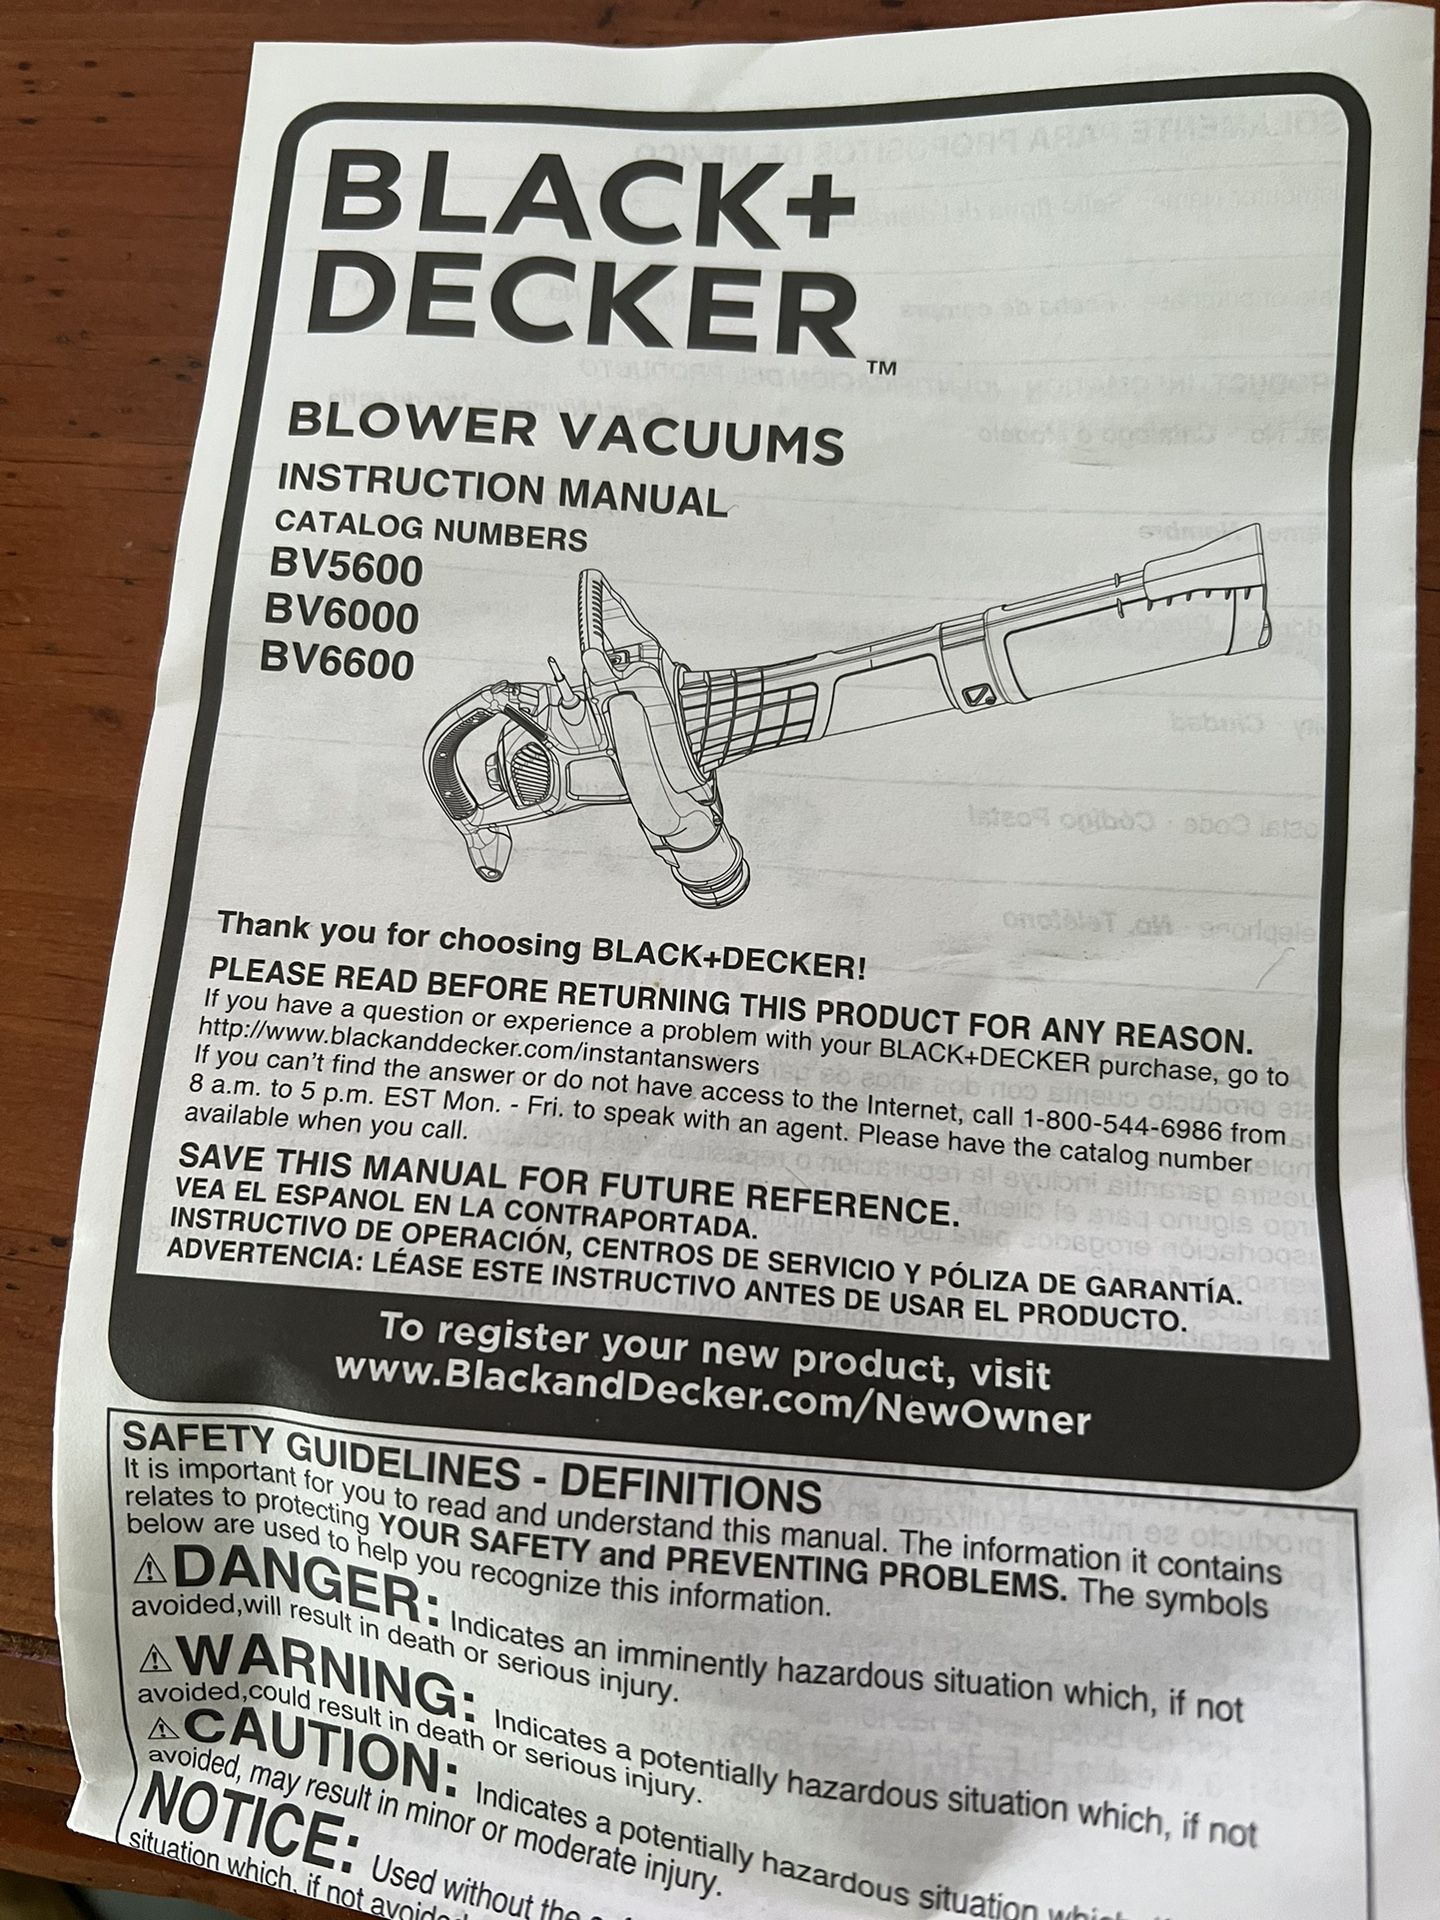 Black + Decker 20v Leaf Blower for Sale in Menifee, CA - OfferUp